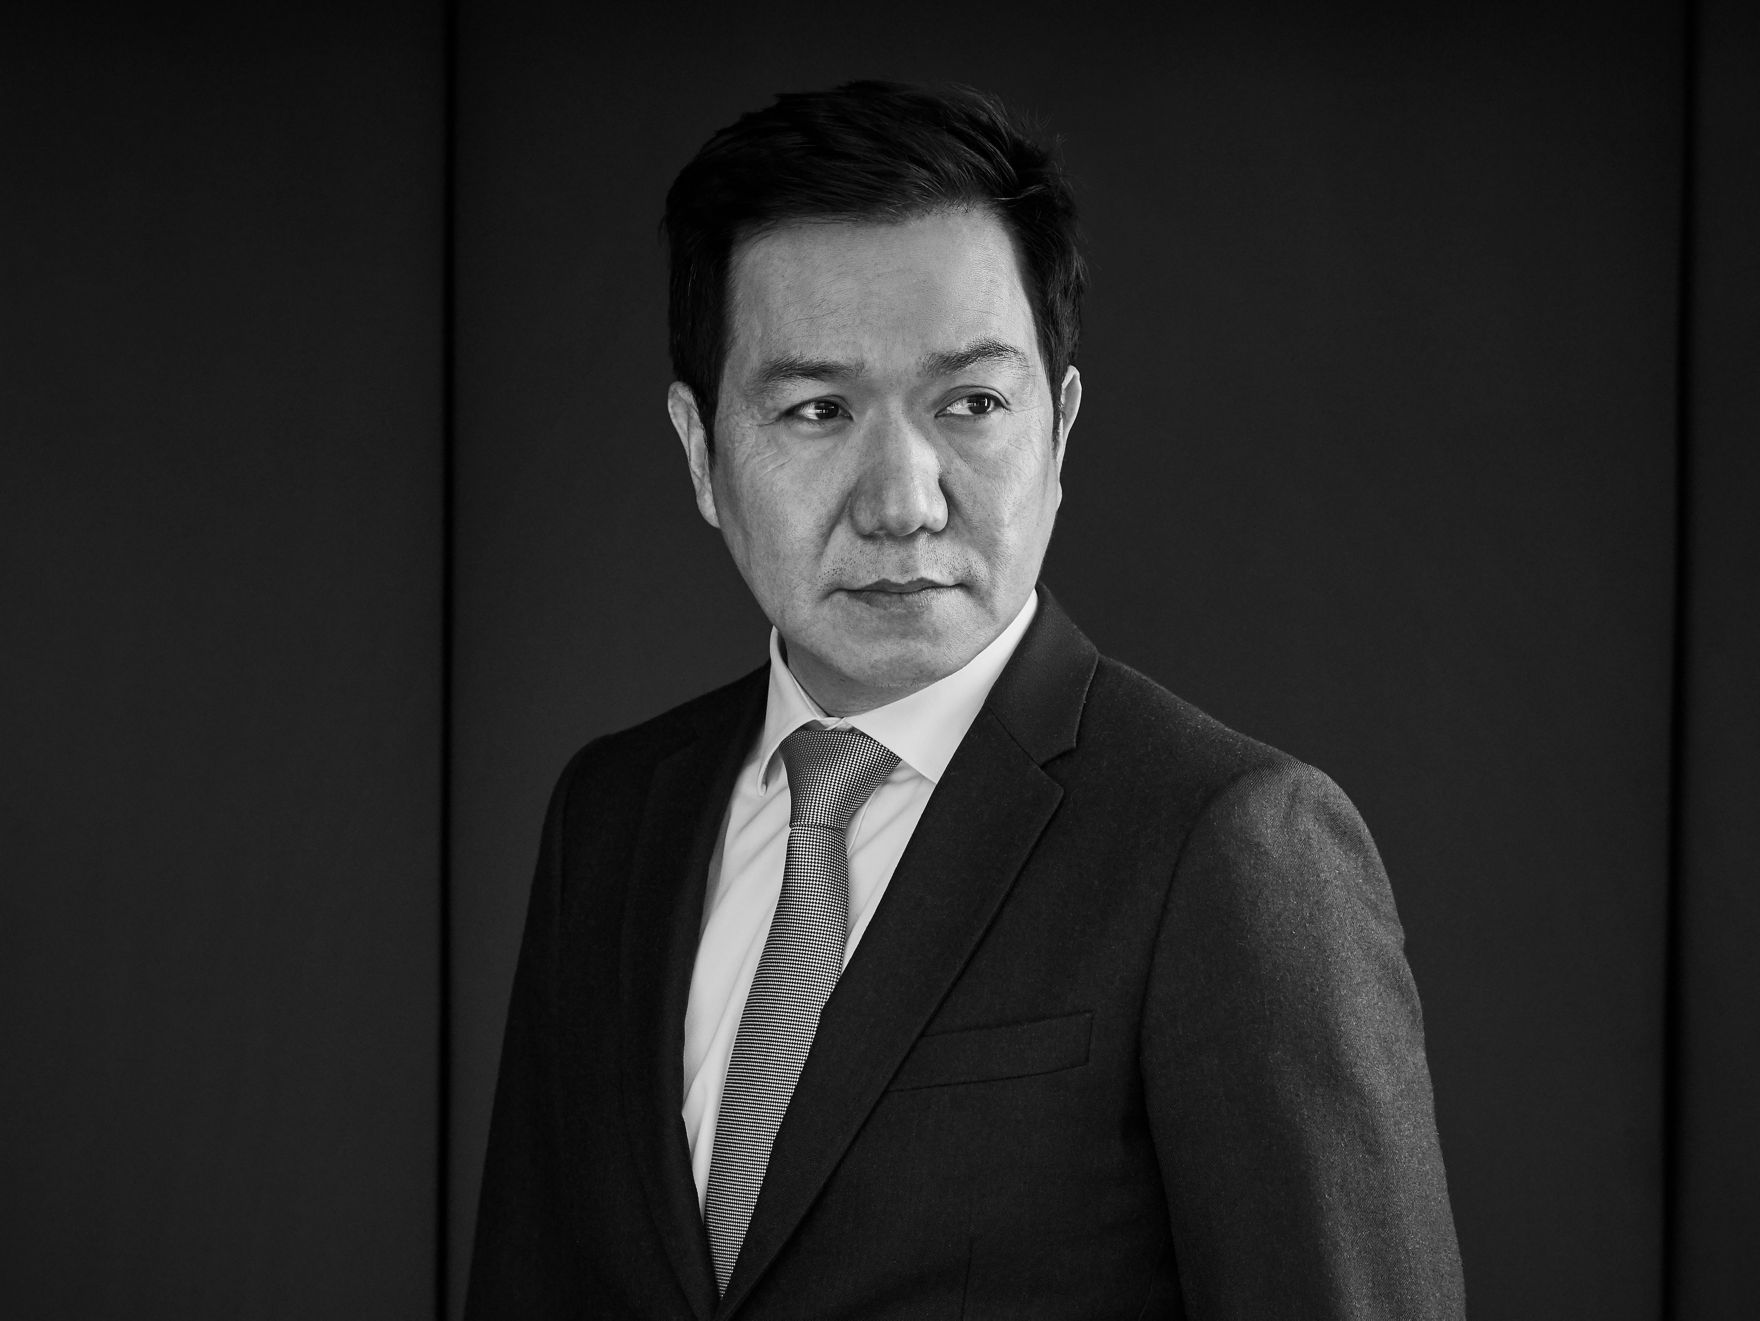 Na fotografii je SangYup Lee, výkonný viceprezident a vedoucí globálního designérského centra Hyundai.